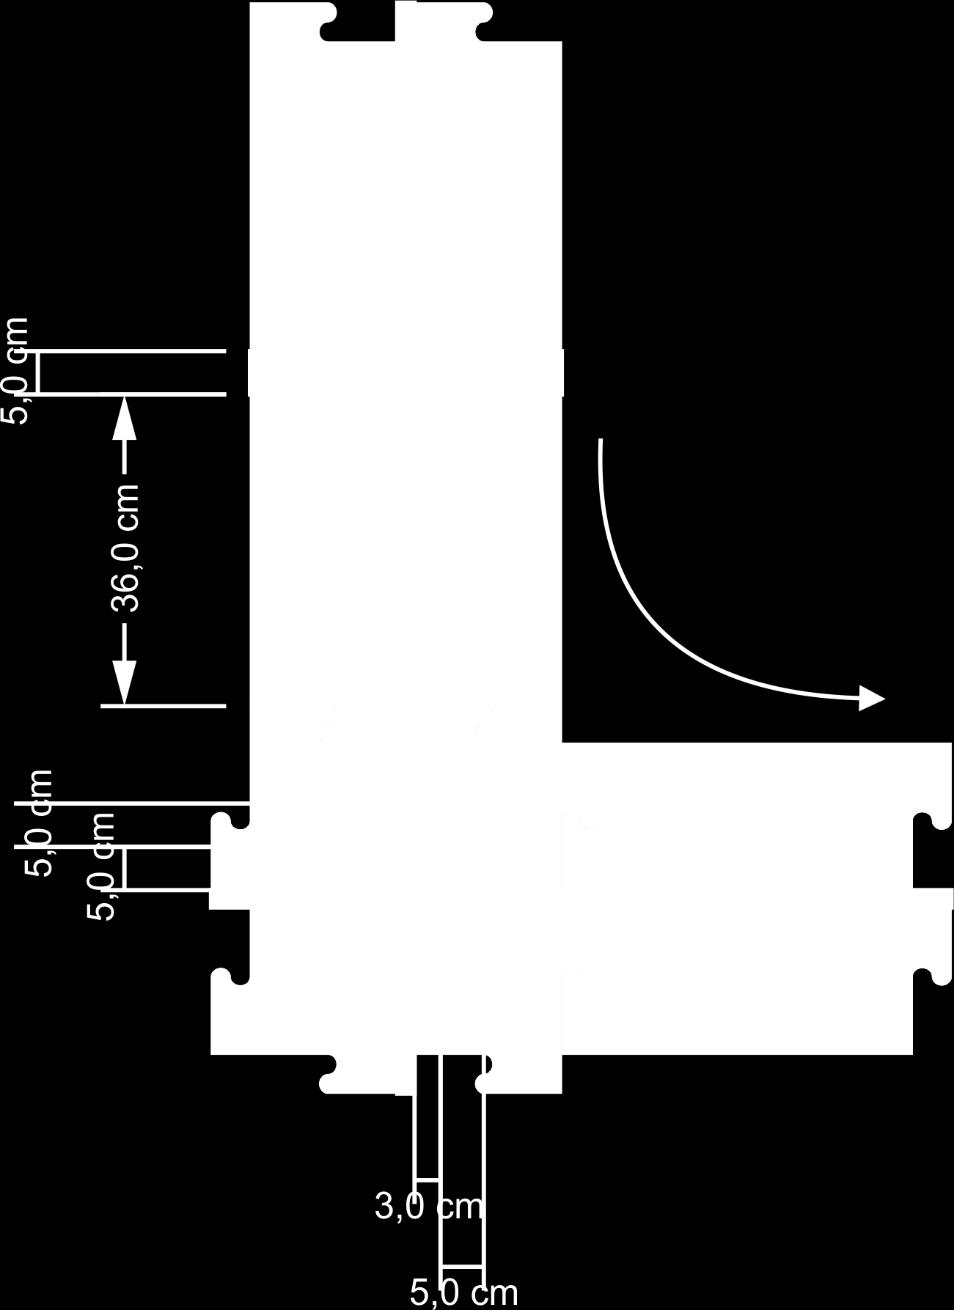 ocorrência da curva, a 5,0 cm da mesma (Figura 4).